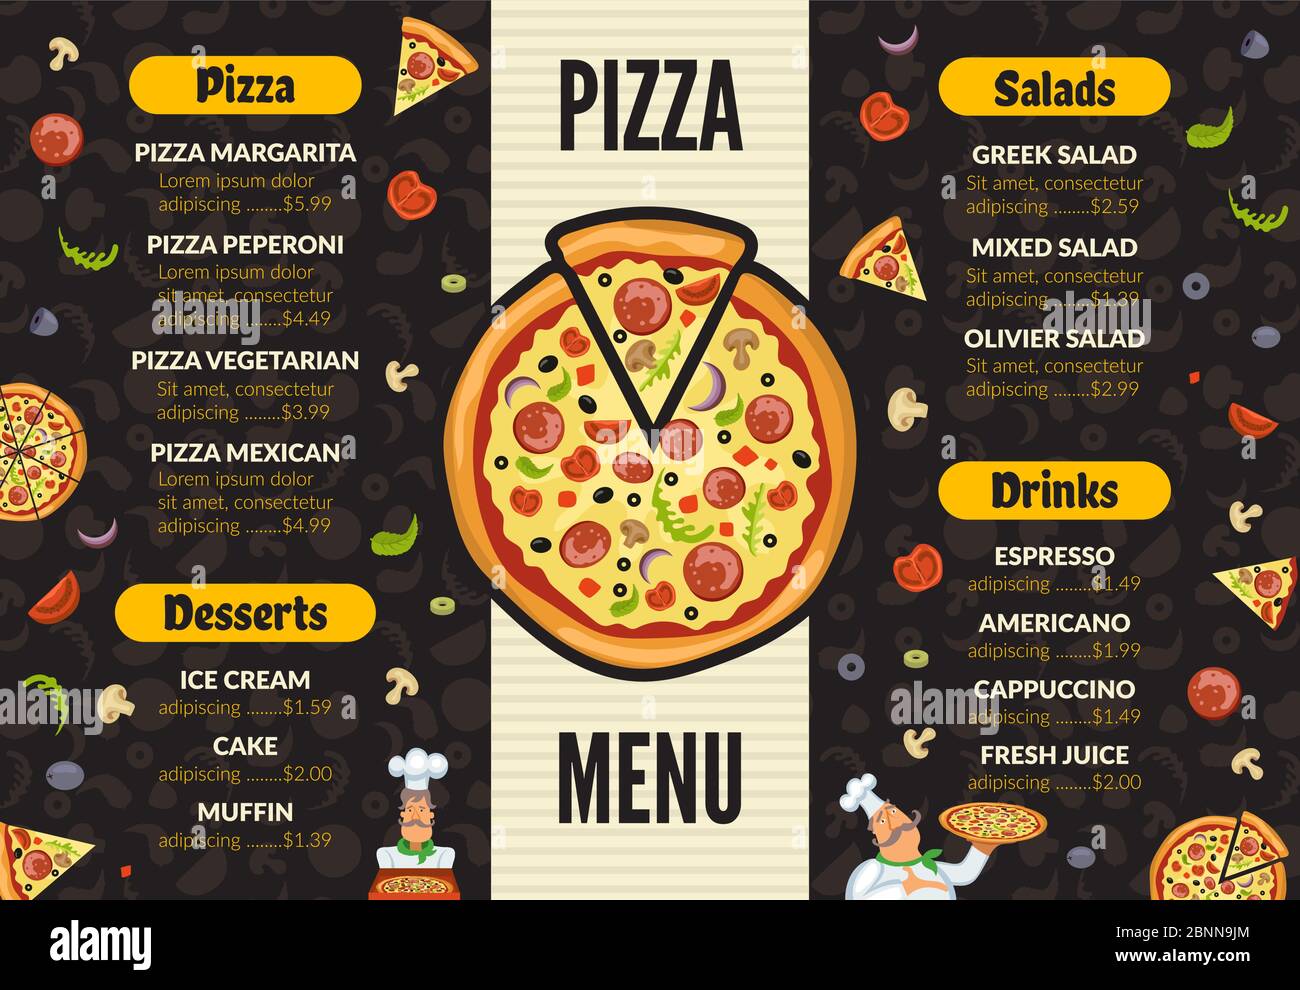 Pizza: Hãy thưởng thức hương vị đầy mê hoặc của chiếc bánh Pizza tuyệt vời này. Với vỏ bánh giòn tan, phô mai béo ngậy và các loại nguyên liệu đa dạng, mỗi miếng pizza đều khiến bạn muốn ăn thêm vài miếng nữa. Hãy xem hình ảnh và chinh phục sự ngon miệng của pizza. 